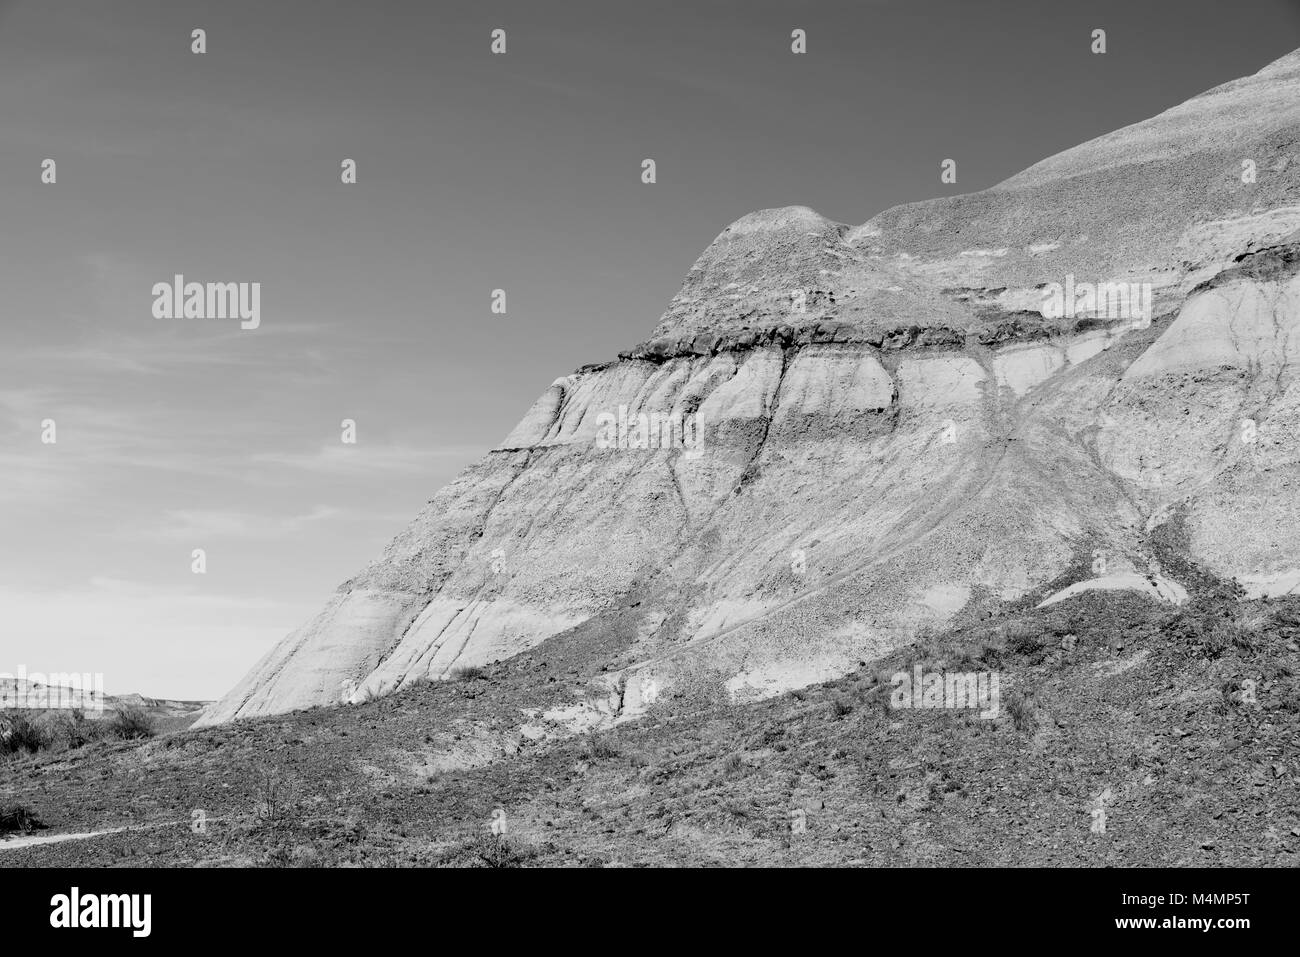 La topographie dans le parc provincial Dinosaur, en Alberta, au Canada, en monochrome ; Site du patrimoine mondial de l'UNESCO Banque D'Images